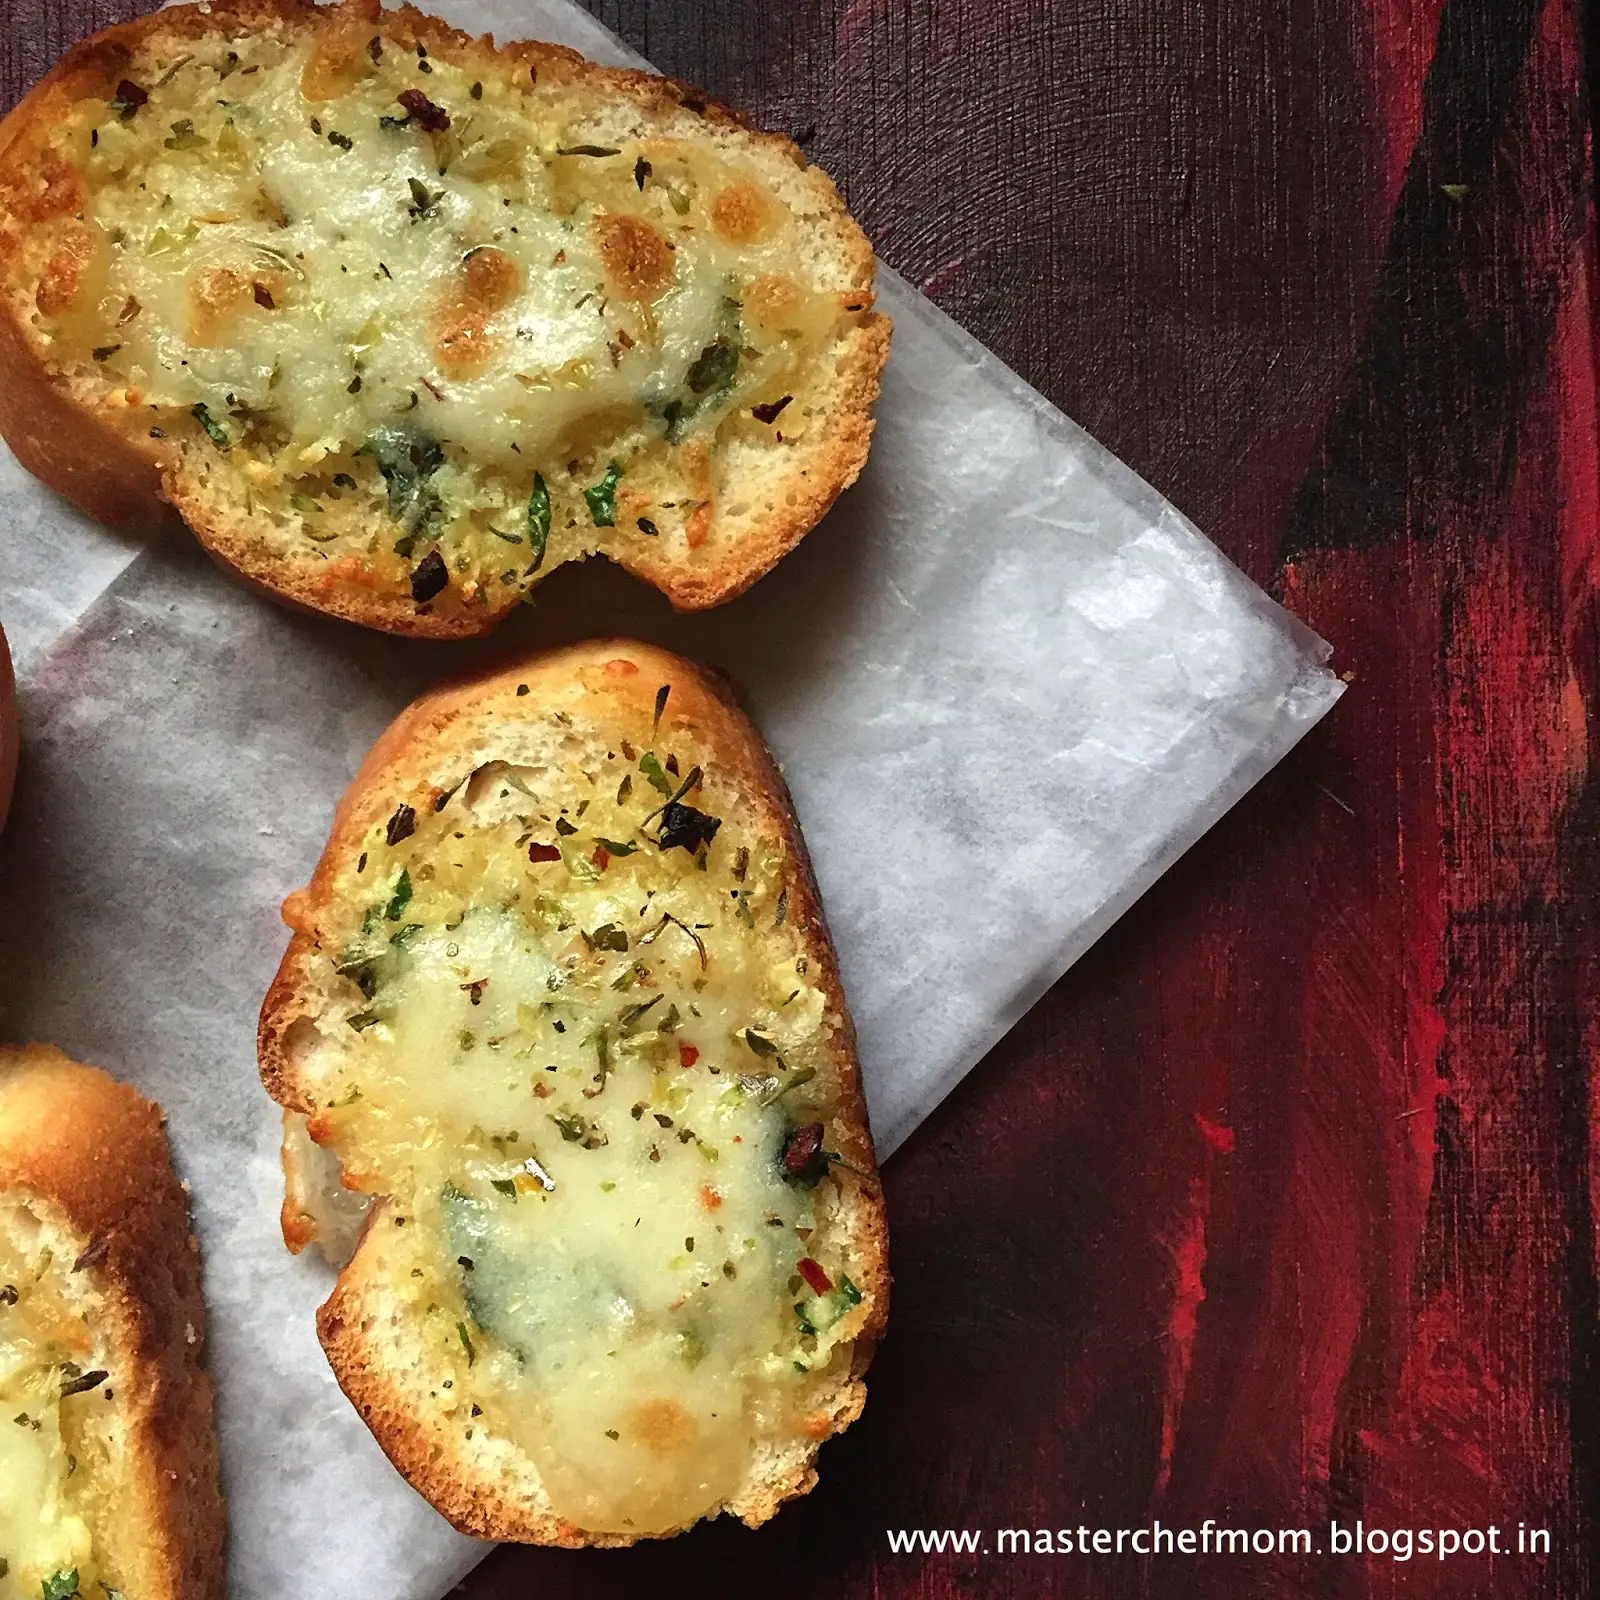 MASTERCHEFMOM: Restaurant Style Garlic Bread with Cheese